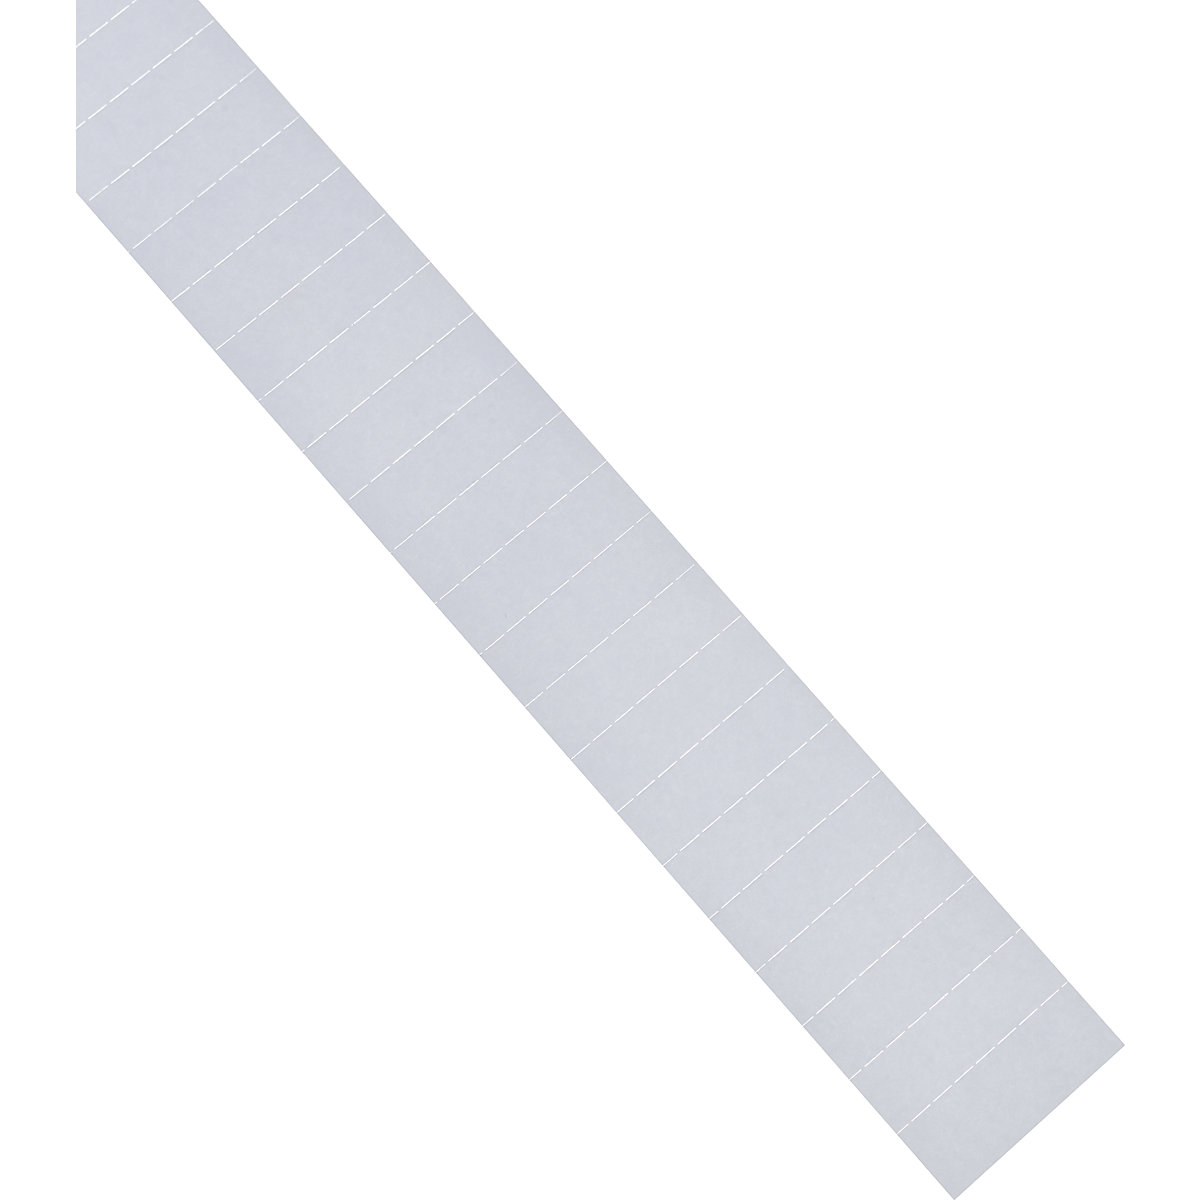 Vtične kartice – magnetoplan, 70 mm, DE 630 kosov, bele barve-8